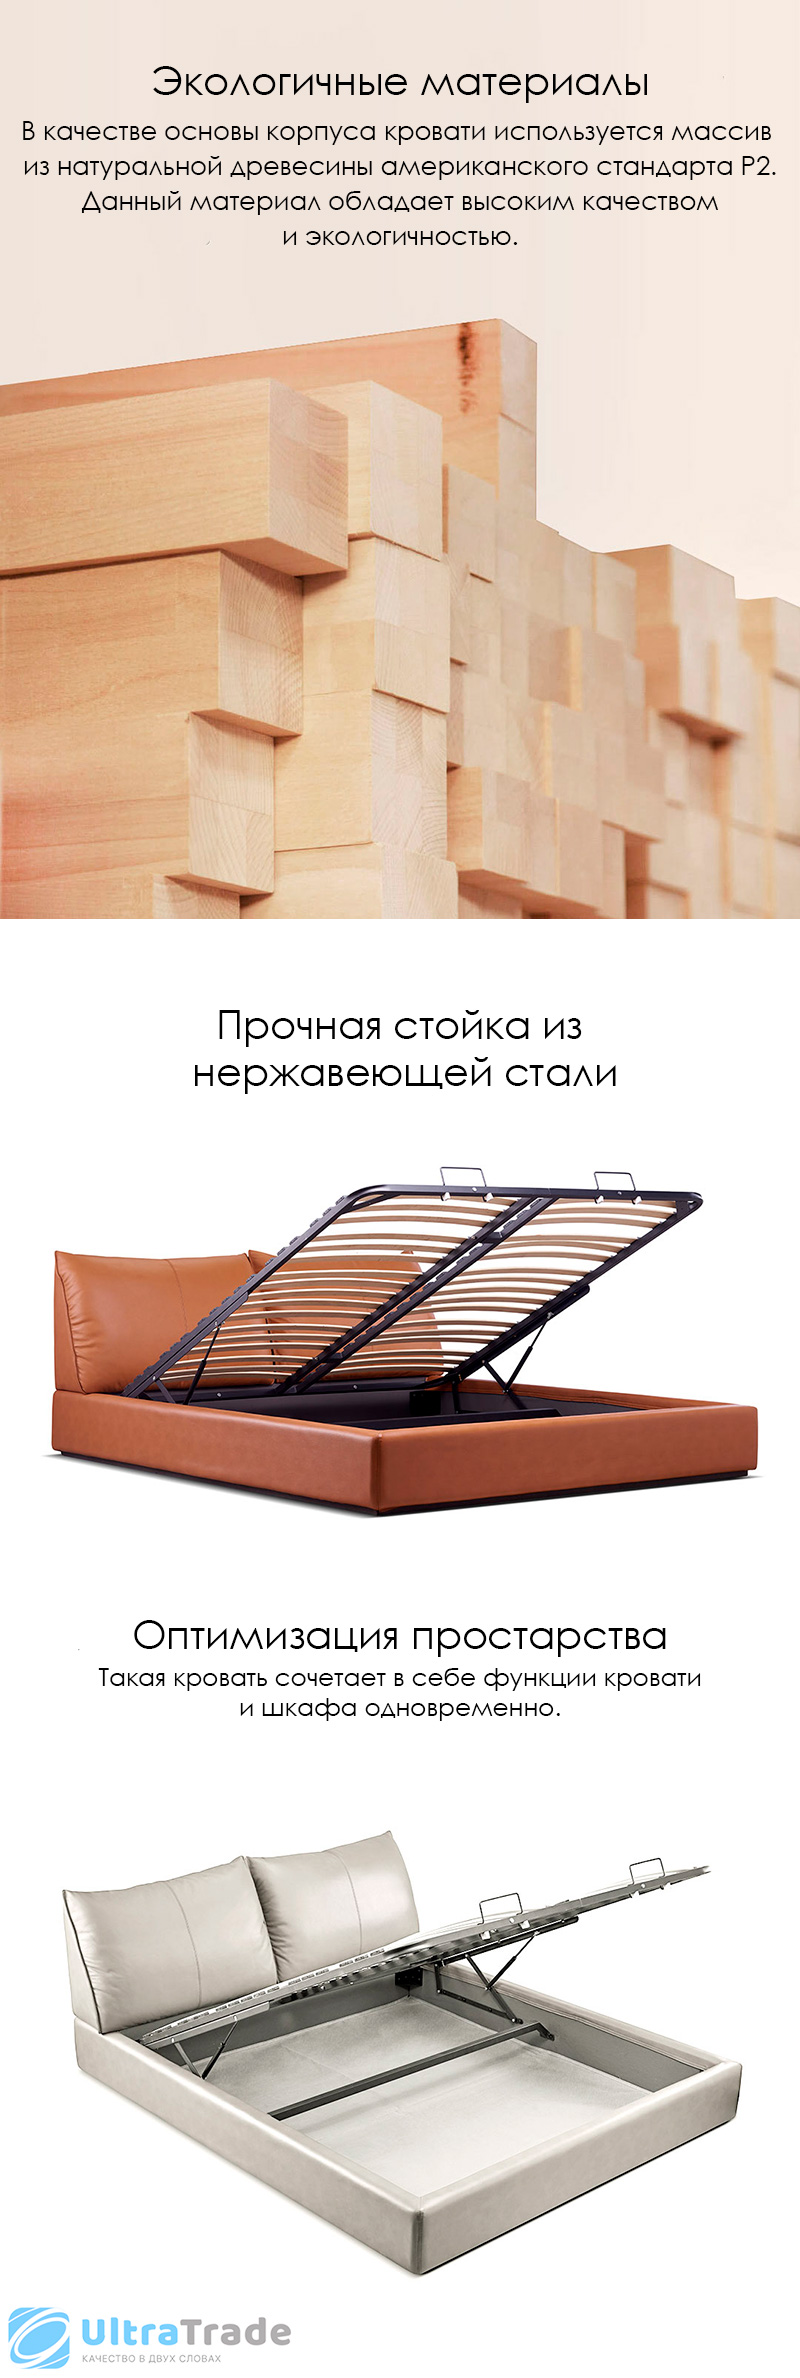 Двуспальная кровать с подъемным механизмом Xiaomi Yang Zi Look Soufflé Leather Storage Bed Set 1.8 m Orange (2 тумбочки в комплекте)